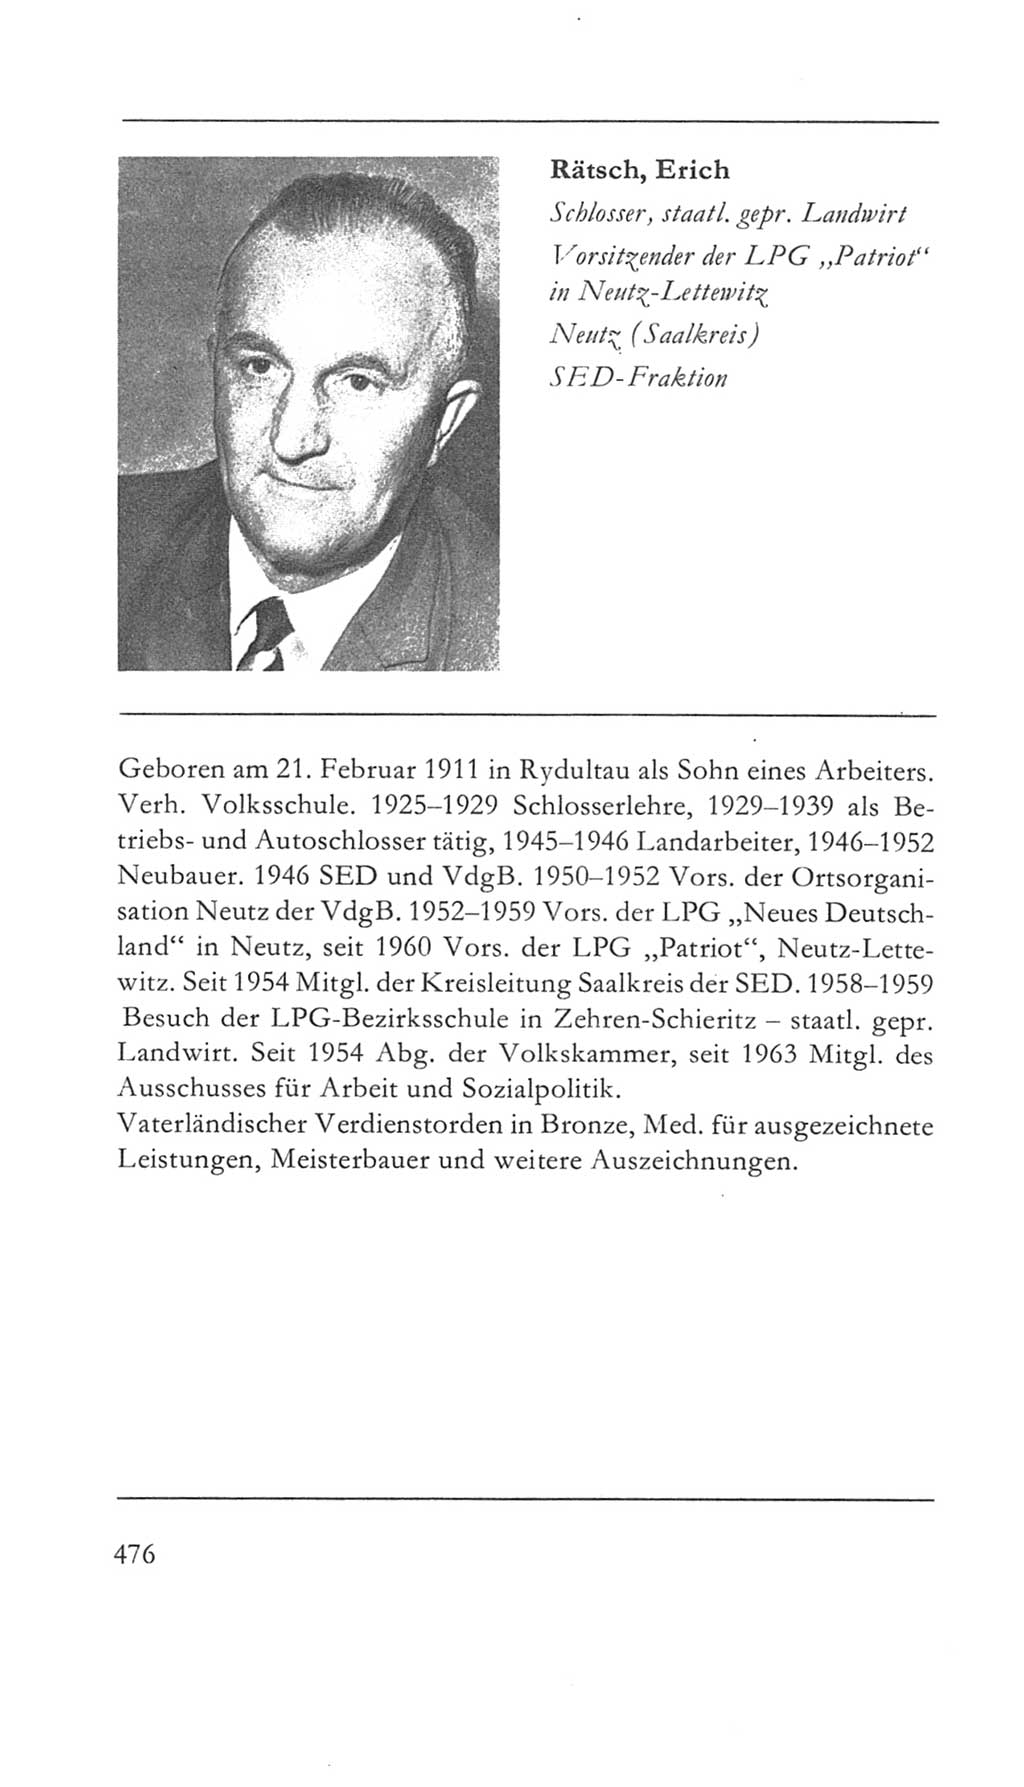 Volkskammer (VK) der Deutschen Demokratischen Republik (DDR) 5. Wahlperiode 1967-1971, Seite 476 (VK. DDR 5. WP. 1967-1971, S. 476)